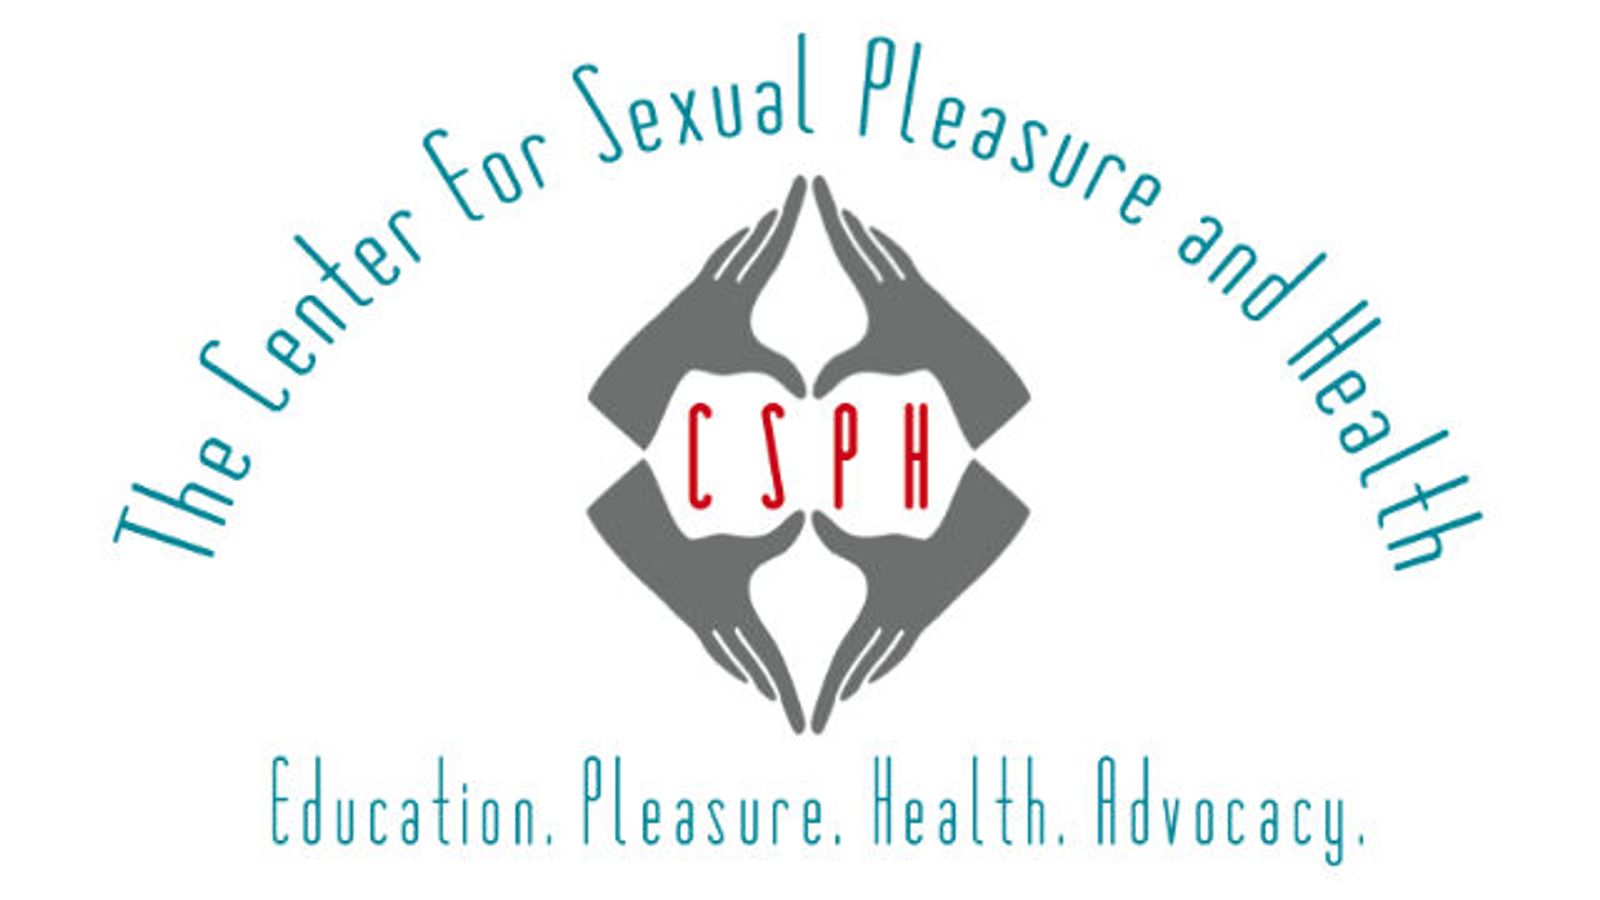 The Center for Sexual Pleasure & Health Awarded Non-Profit Status